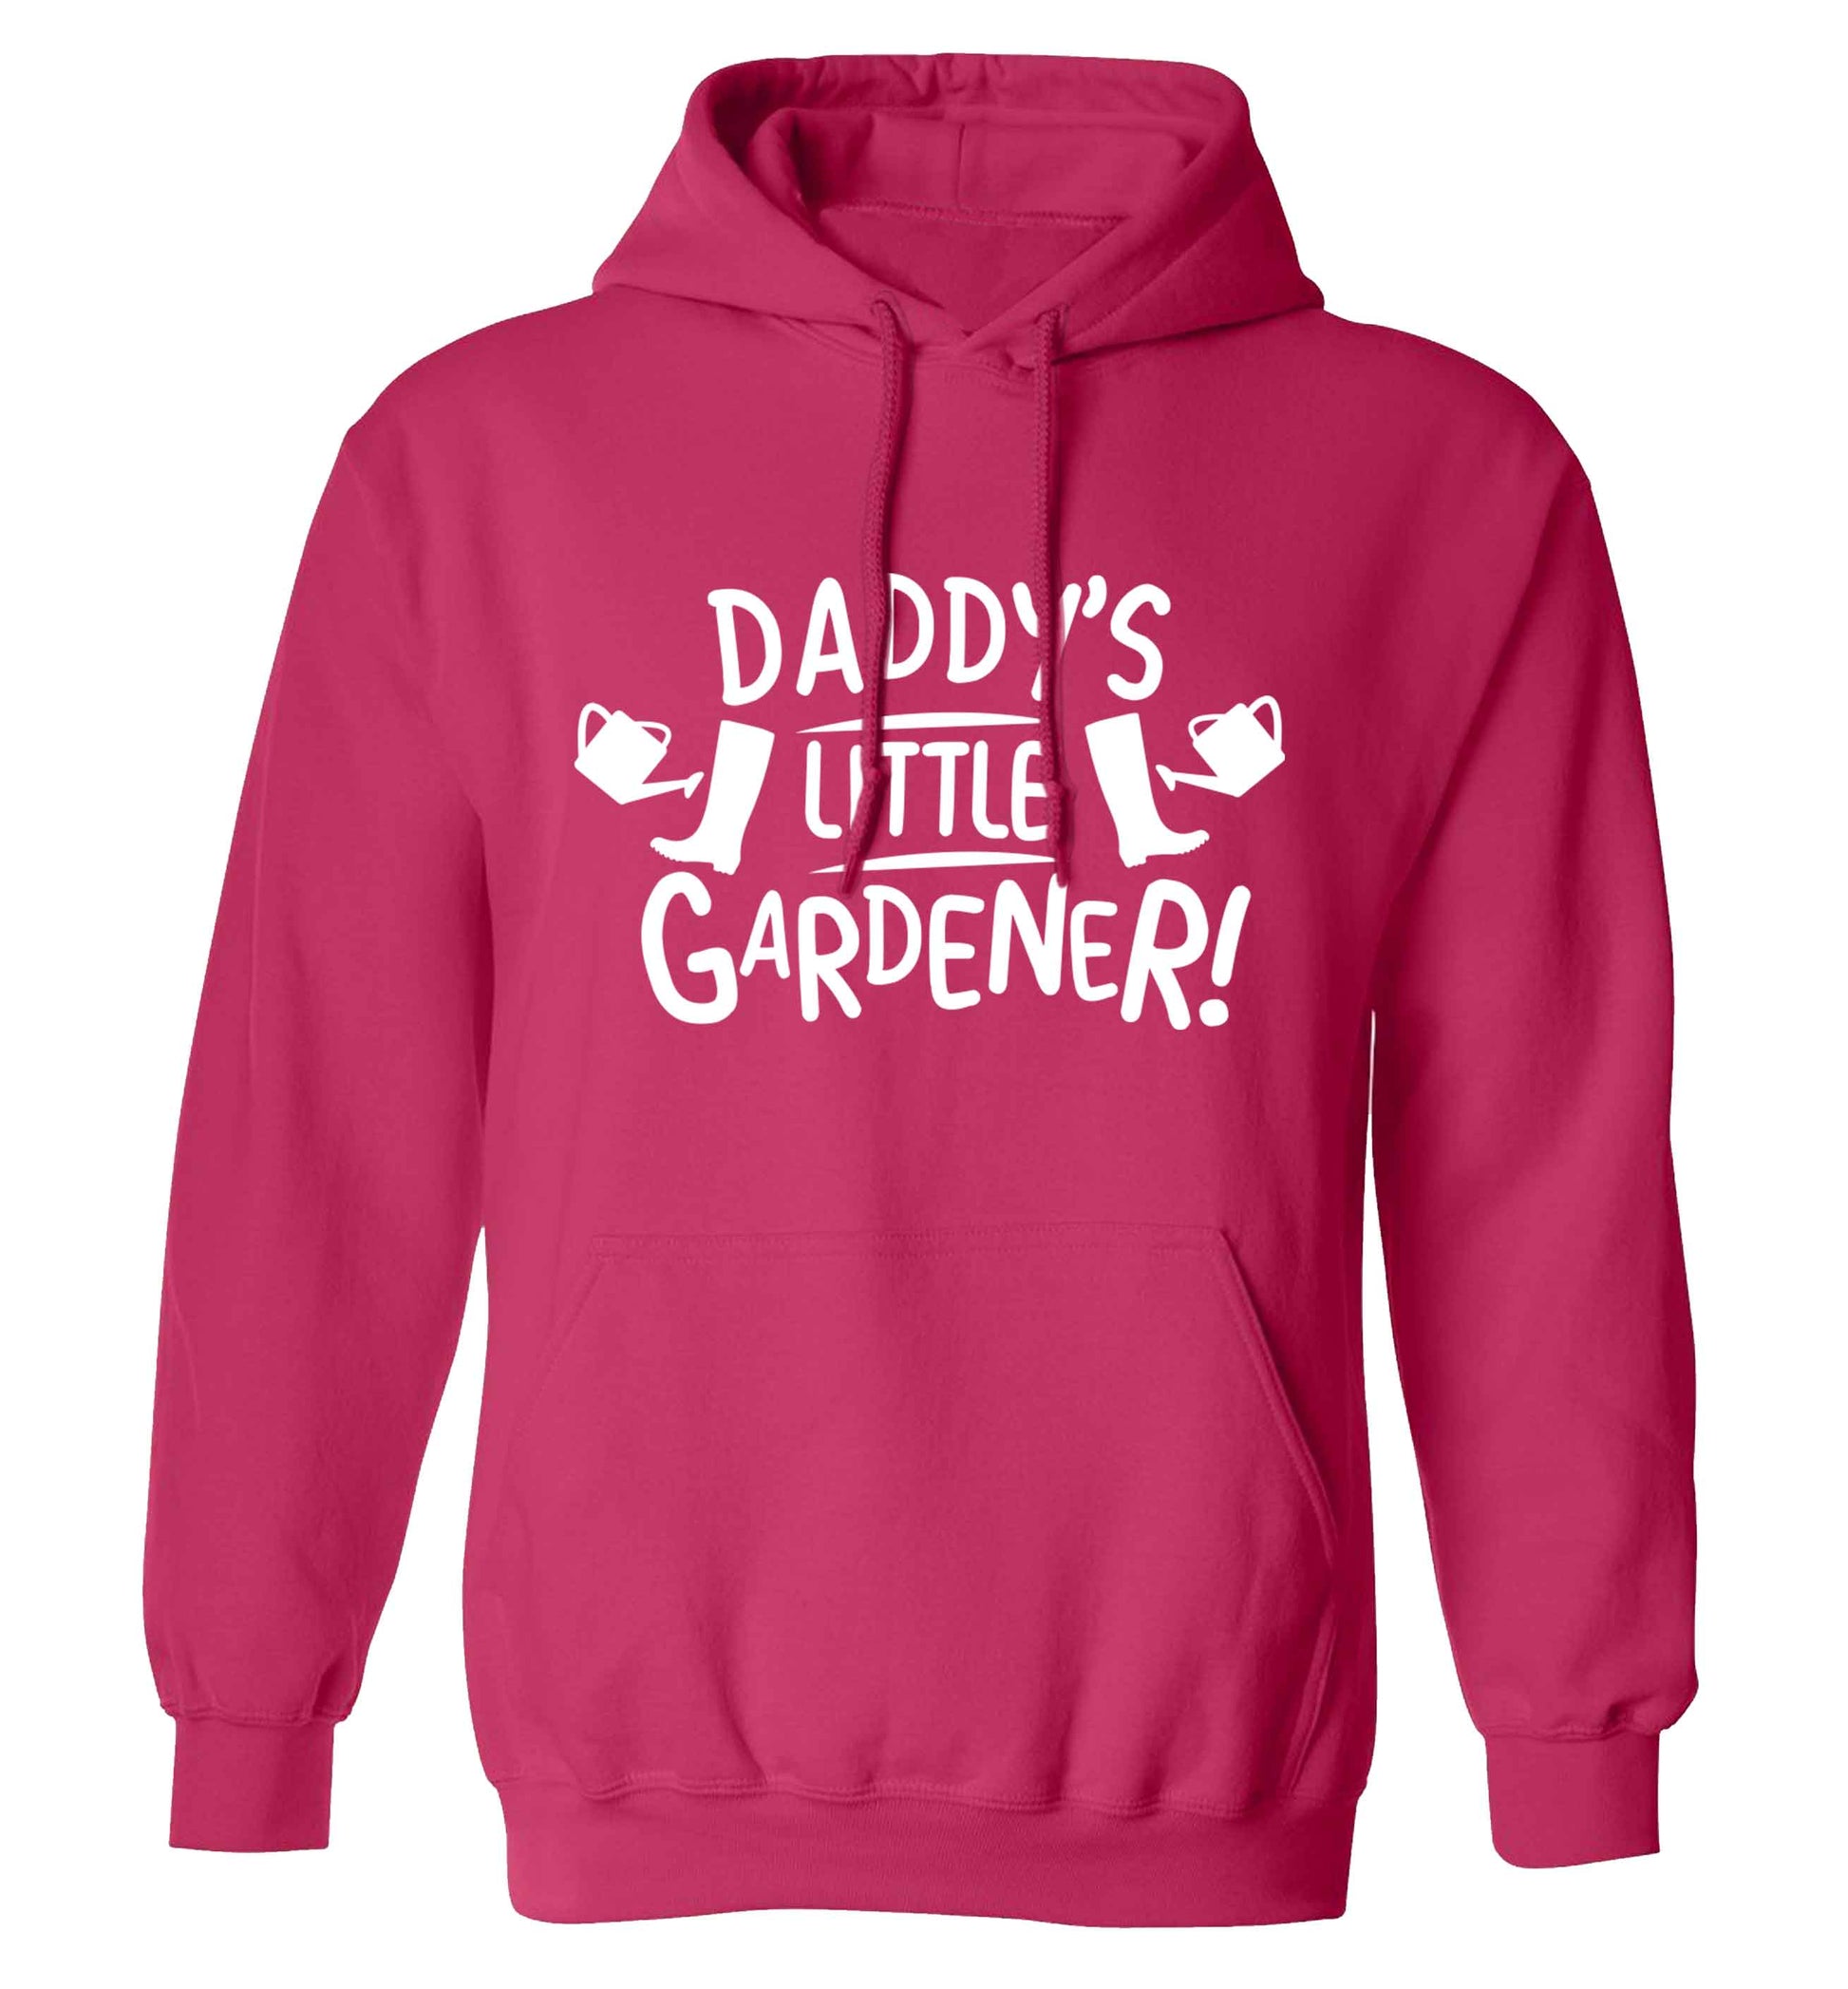 Daddy's little gardener adults unisex pink hoodie 2XL